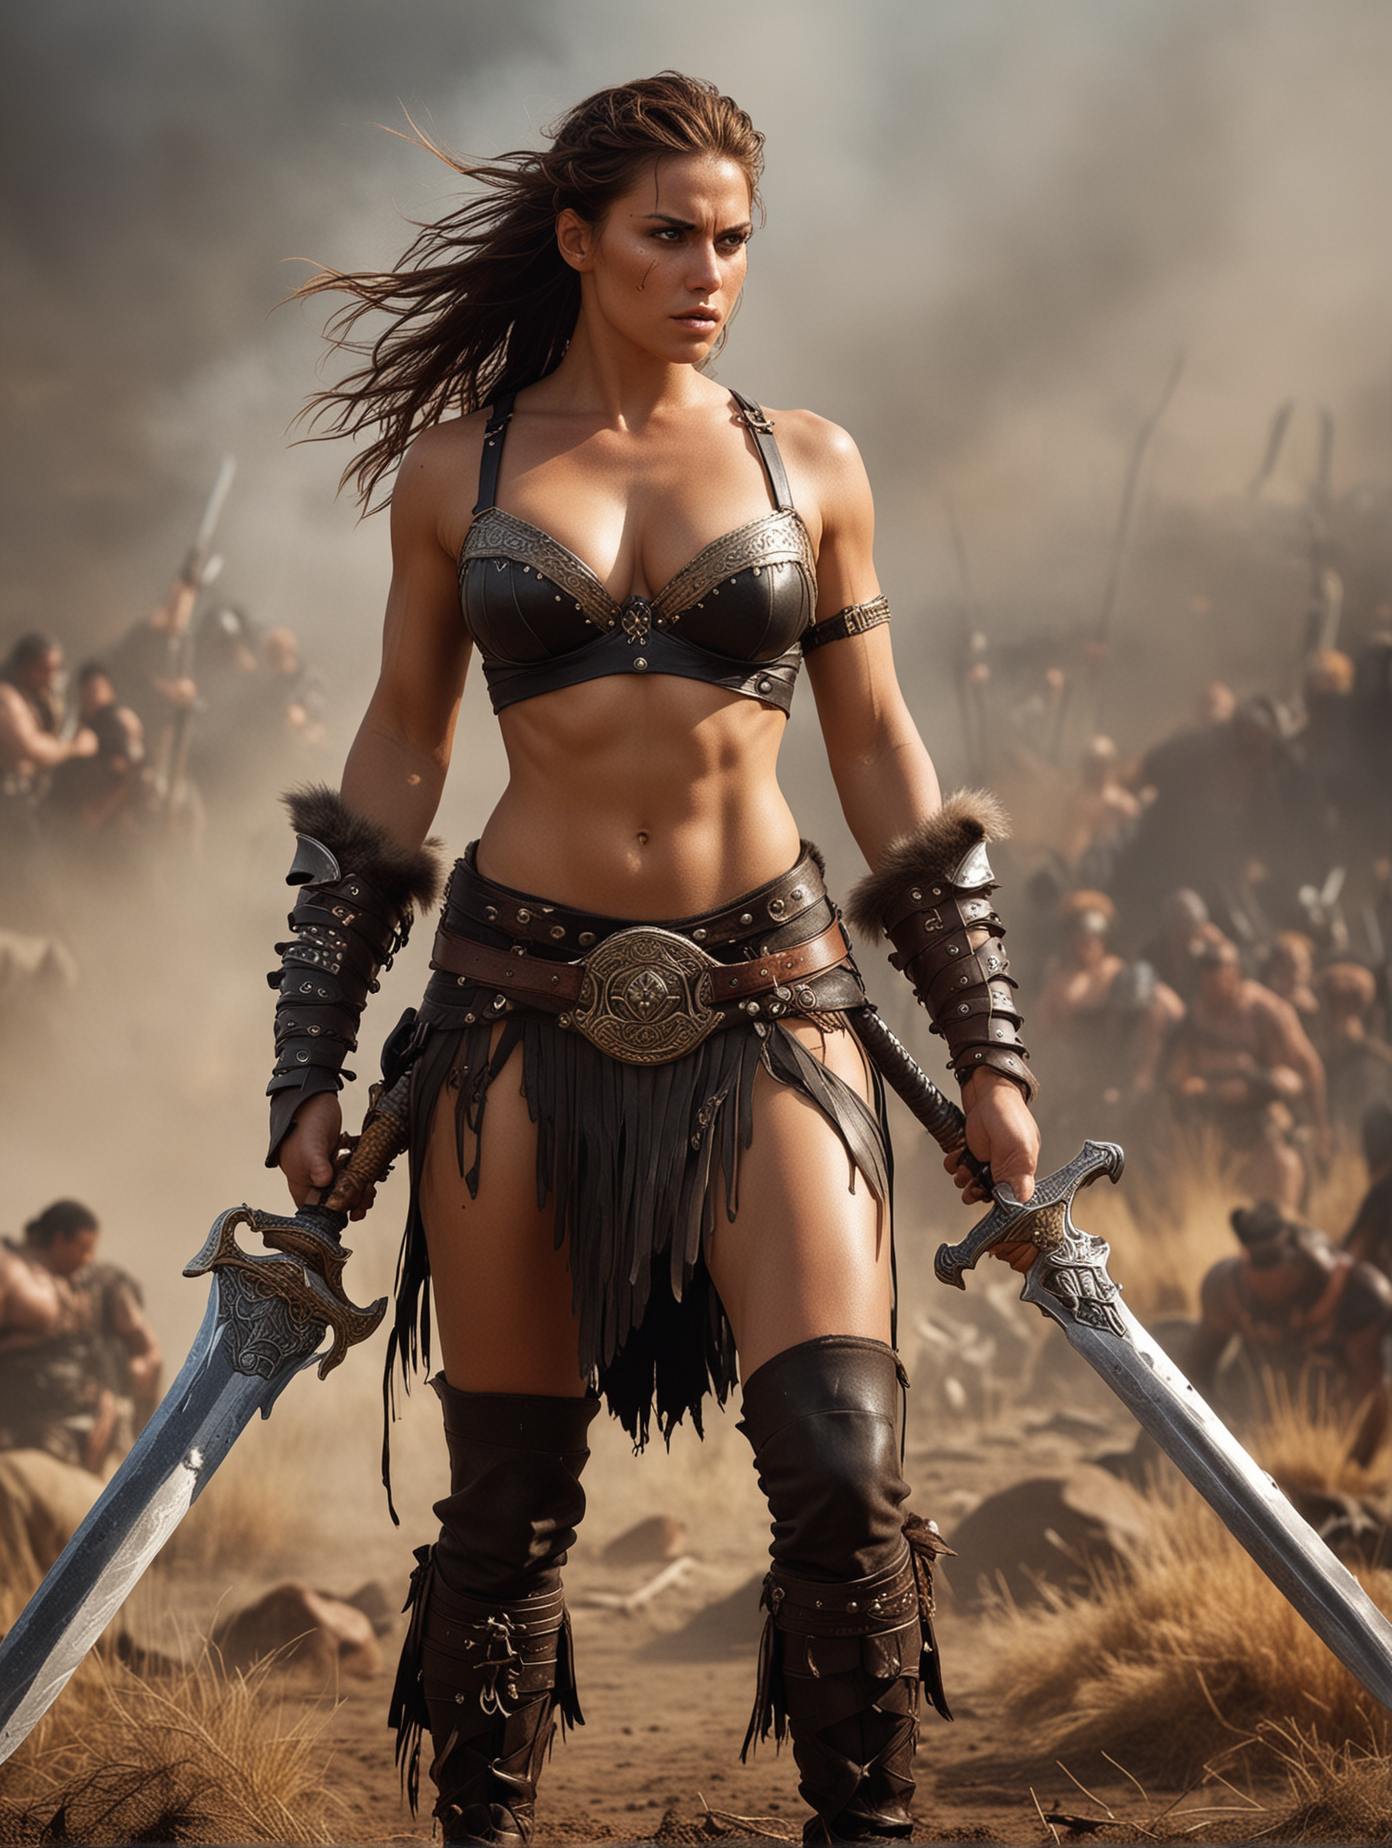 Fierce Barbarian Woman Warrior Brandishes Sword in Epic Battle Scene